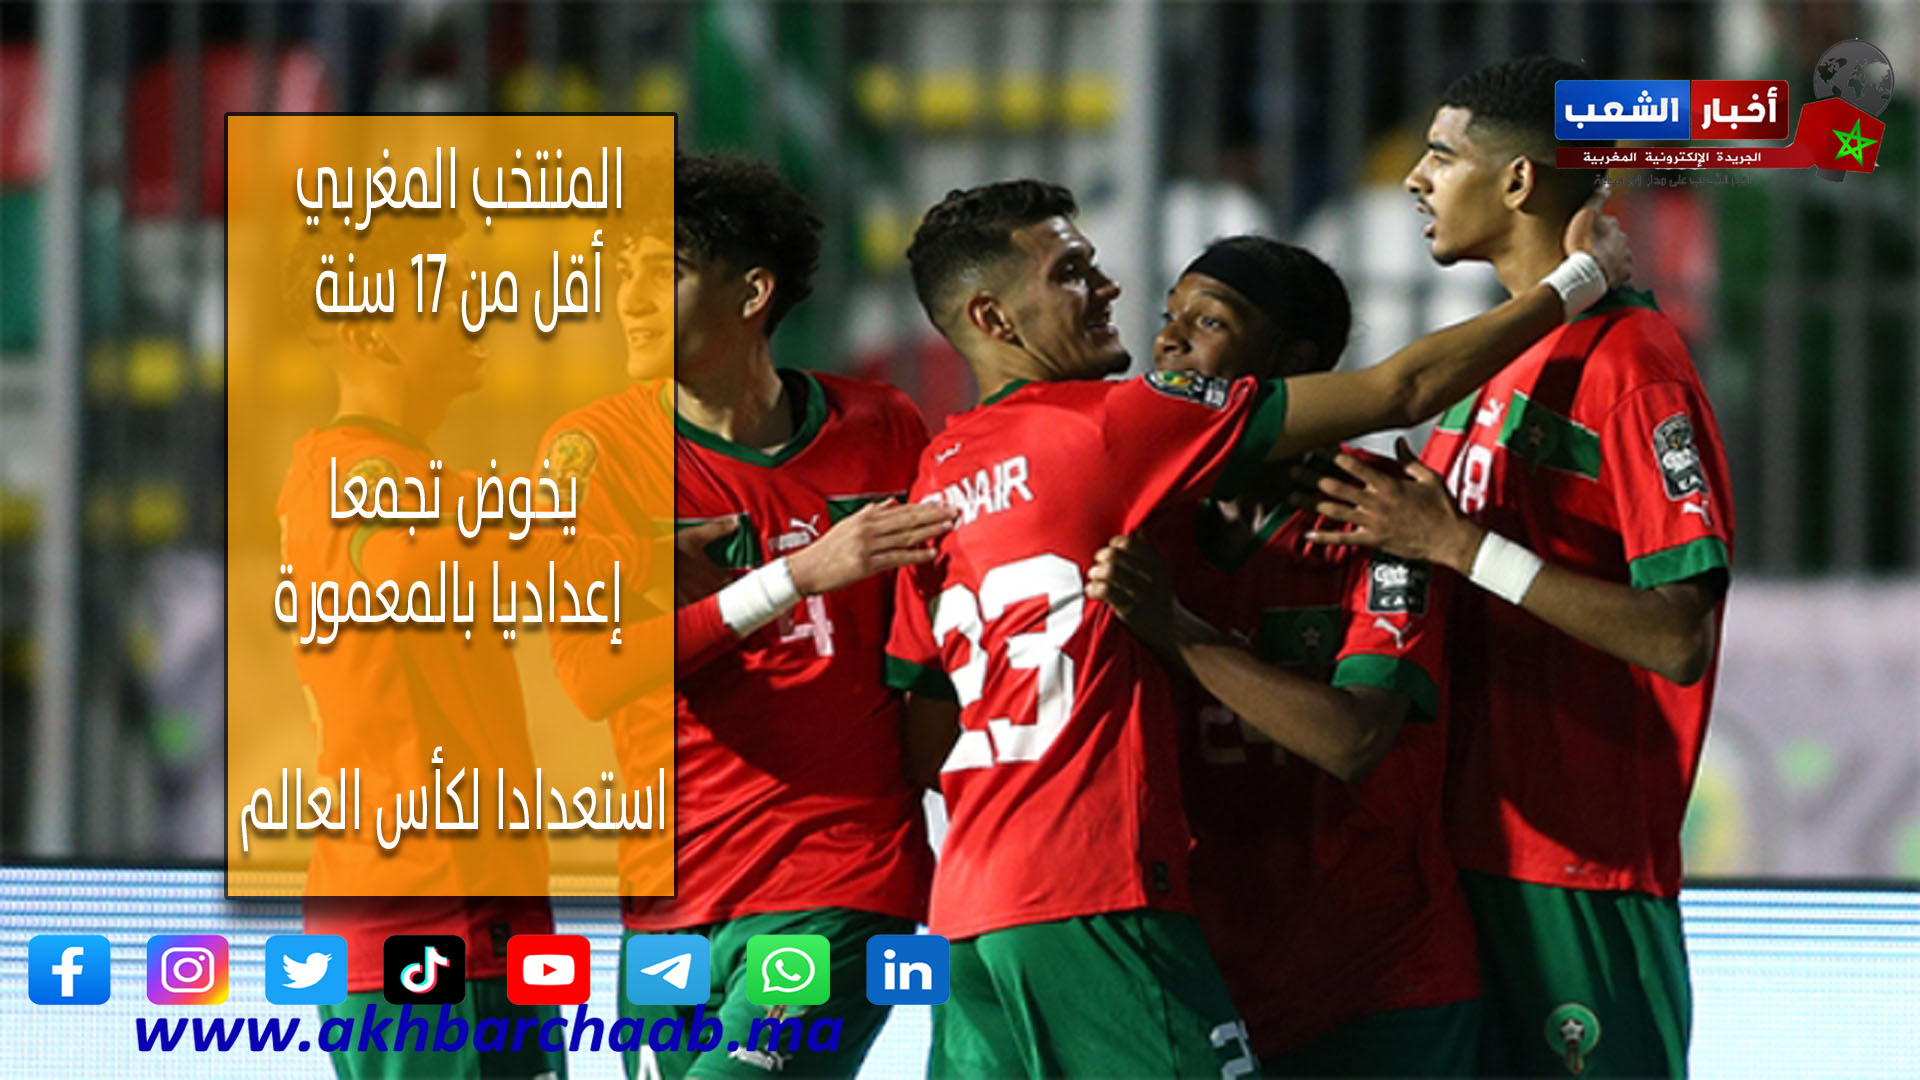 المنتخب المغربي أقل من 17 سنة يخوض تجمعا إعداديا بالمعمورة استعدادا لكأس العالم